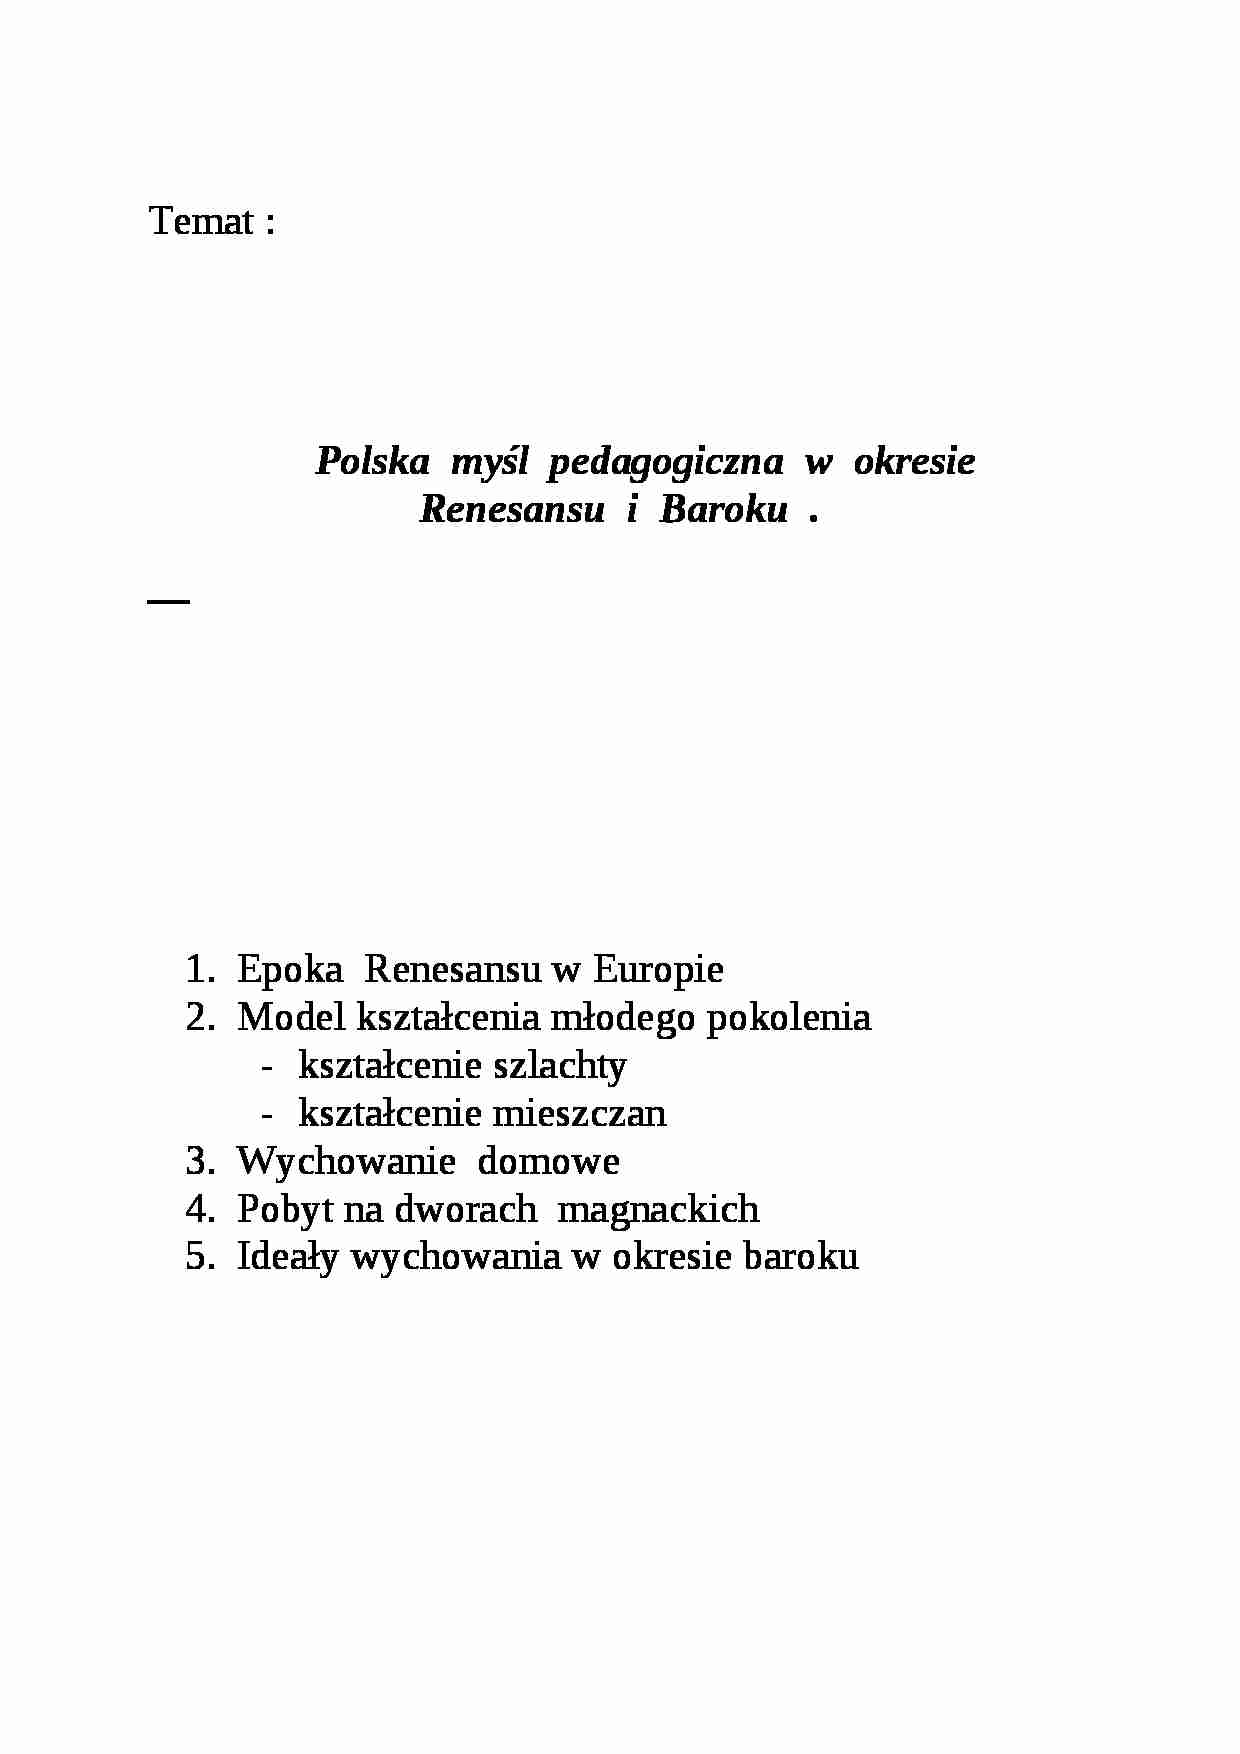 Polska myśl pedagogiczna w okresie renesansu i Baroku- pedagogika - strona 1